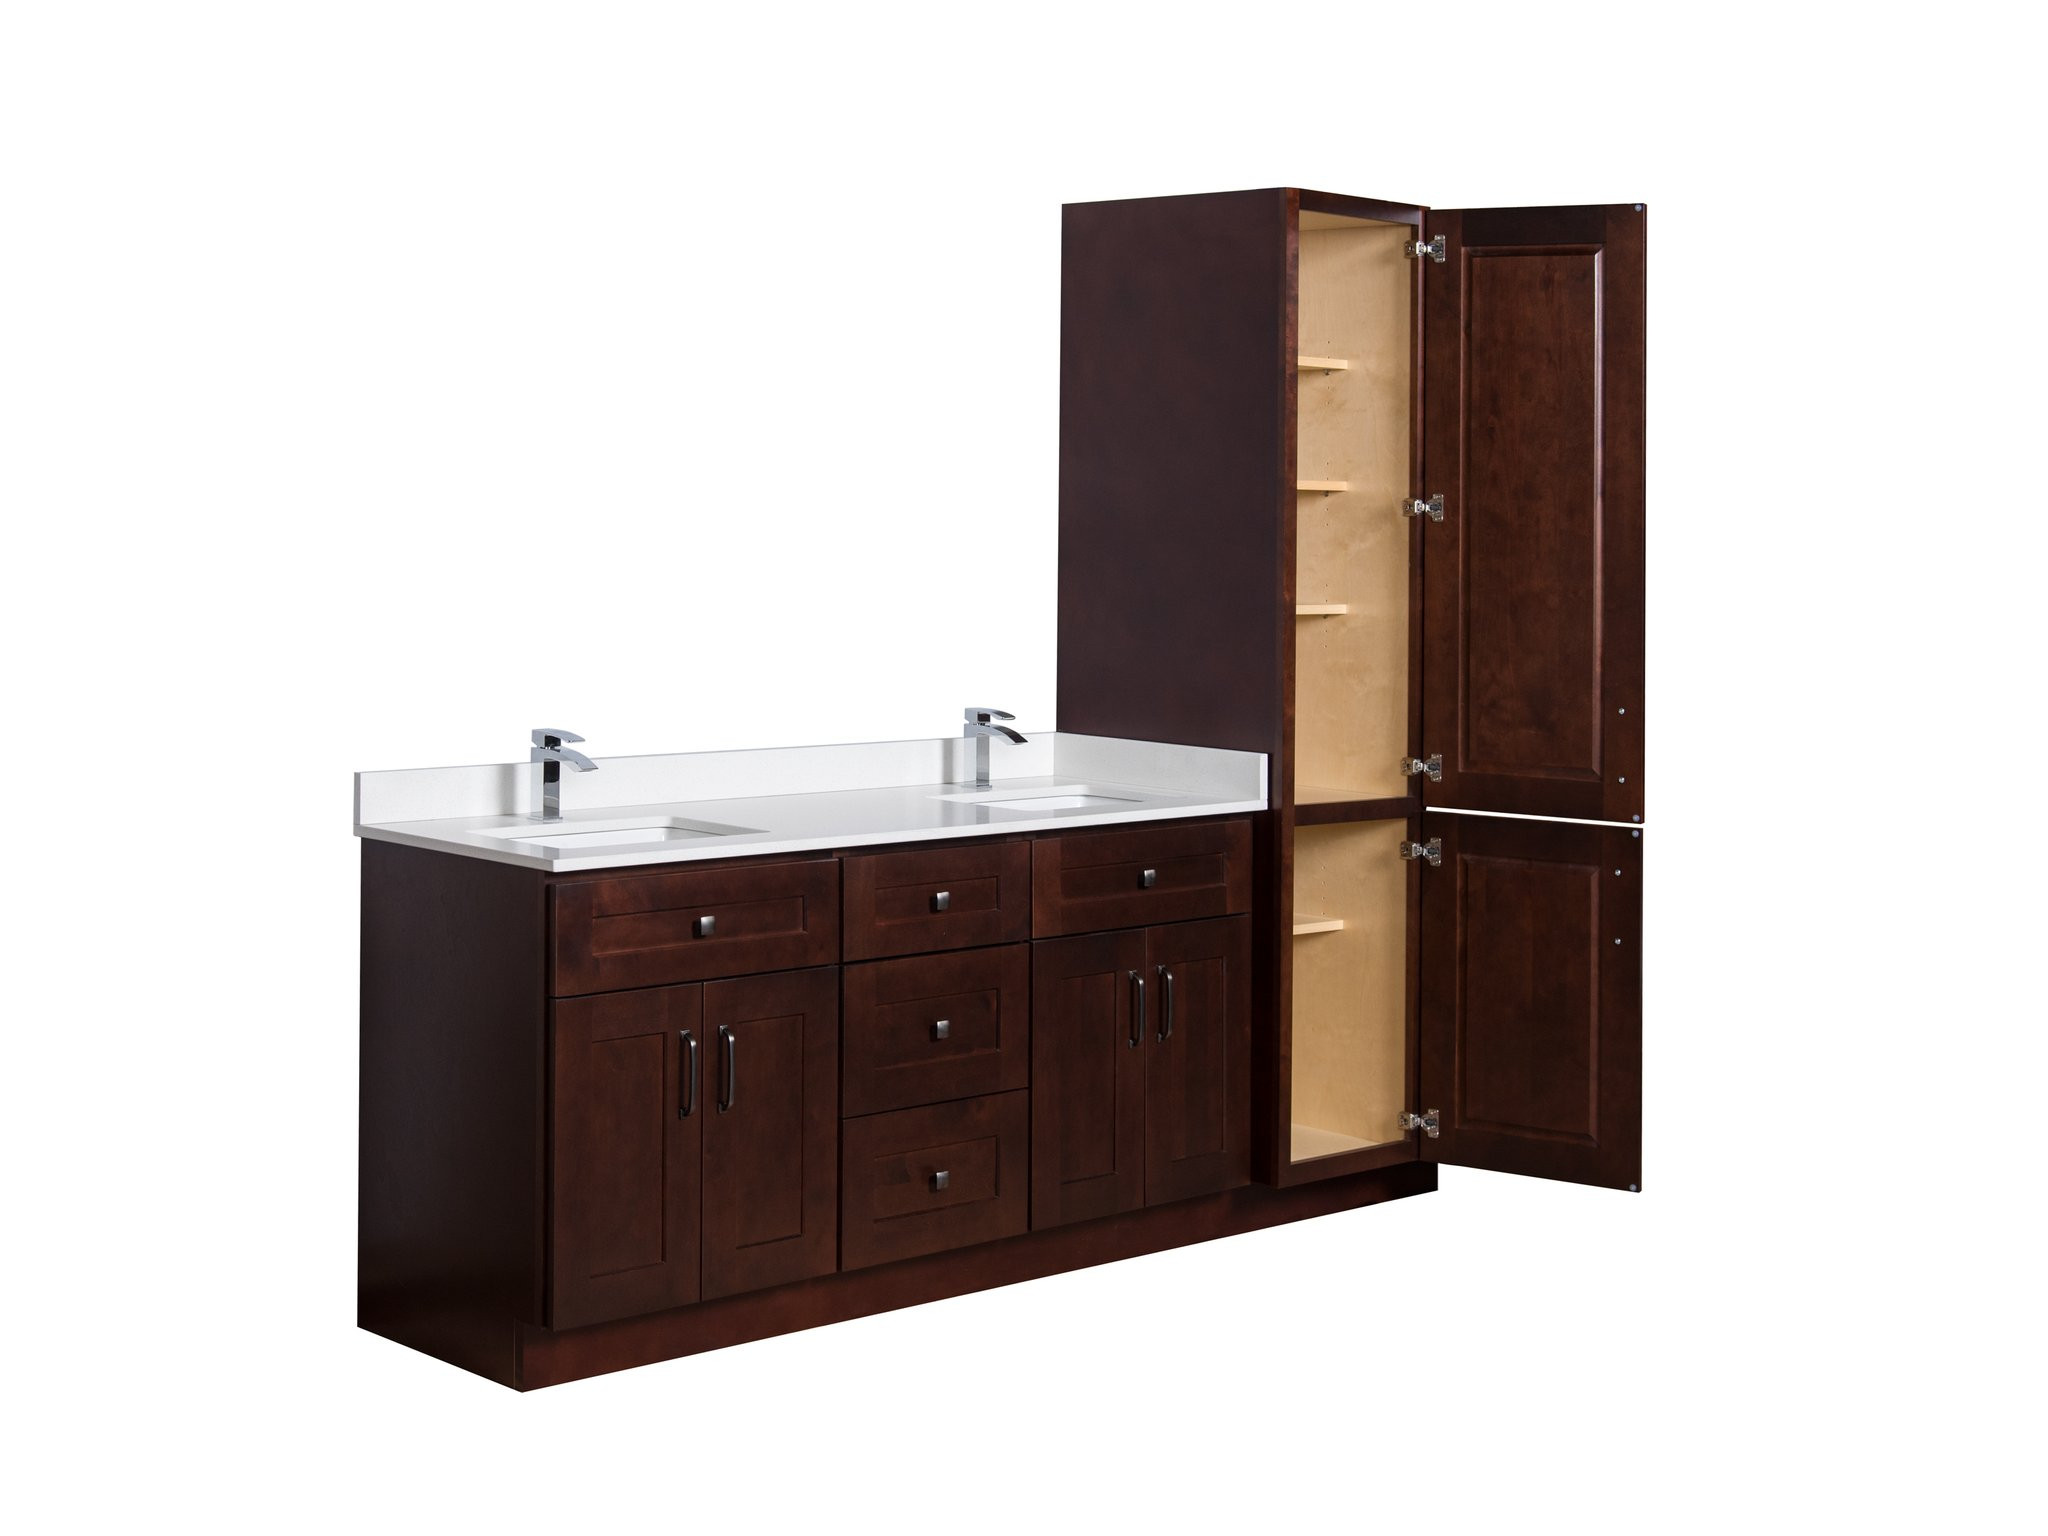 Best ideas about Bathroom Vanity And Linen Cabinet Combo
. Save or Pin Broadway Vanities Solid Wood Bathroom Vanities Always Now.